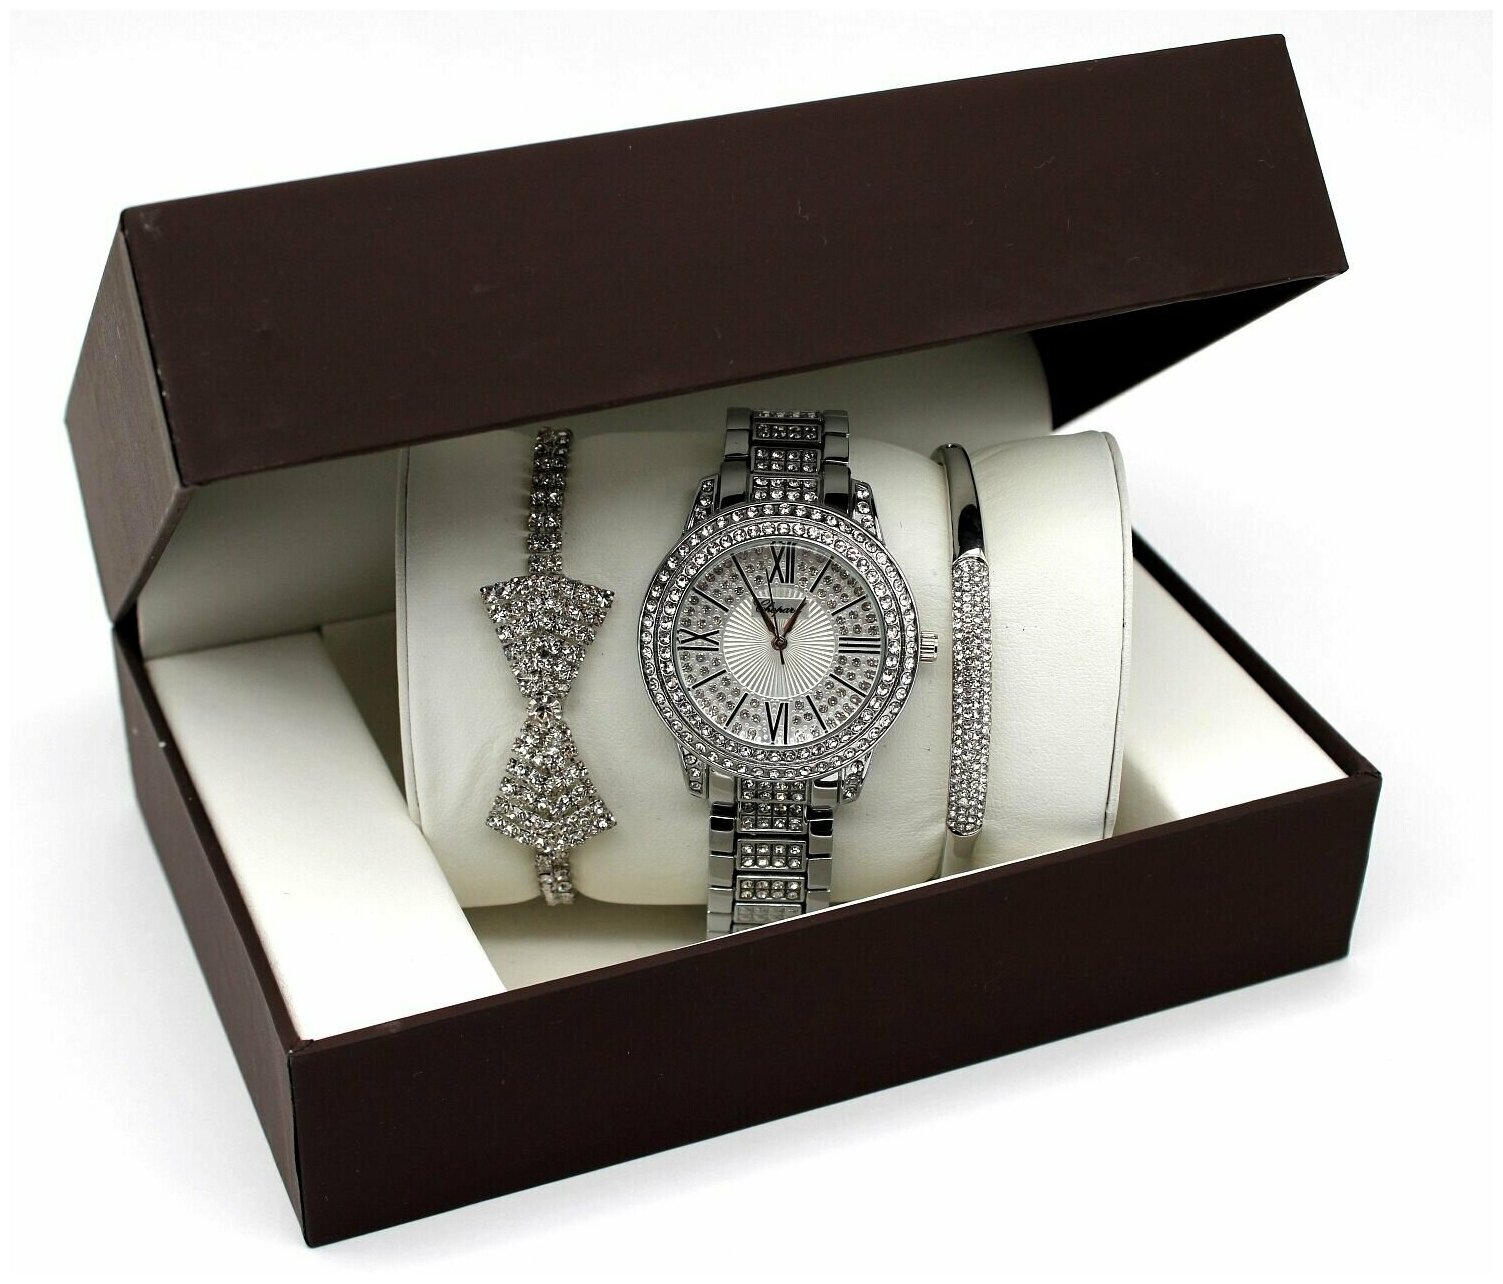 Оригинальный подарок для девушек и женщин на любой праздник. В наборе часы и браслет. Подарочная упаковка в подарок.